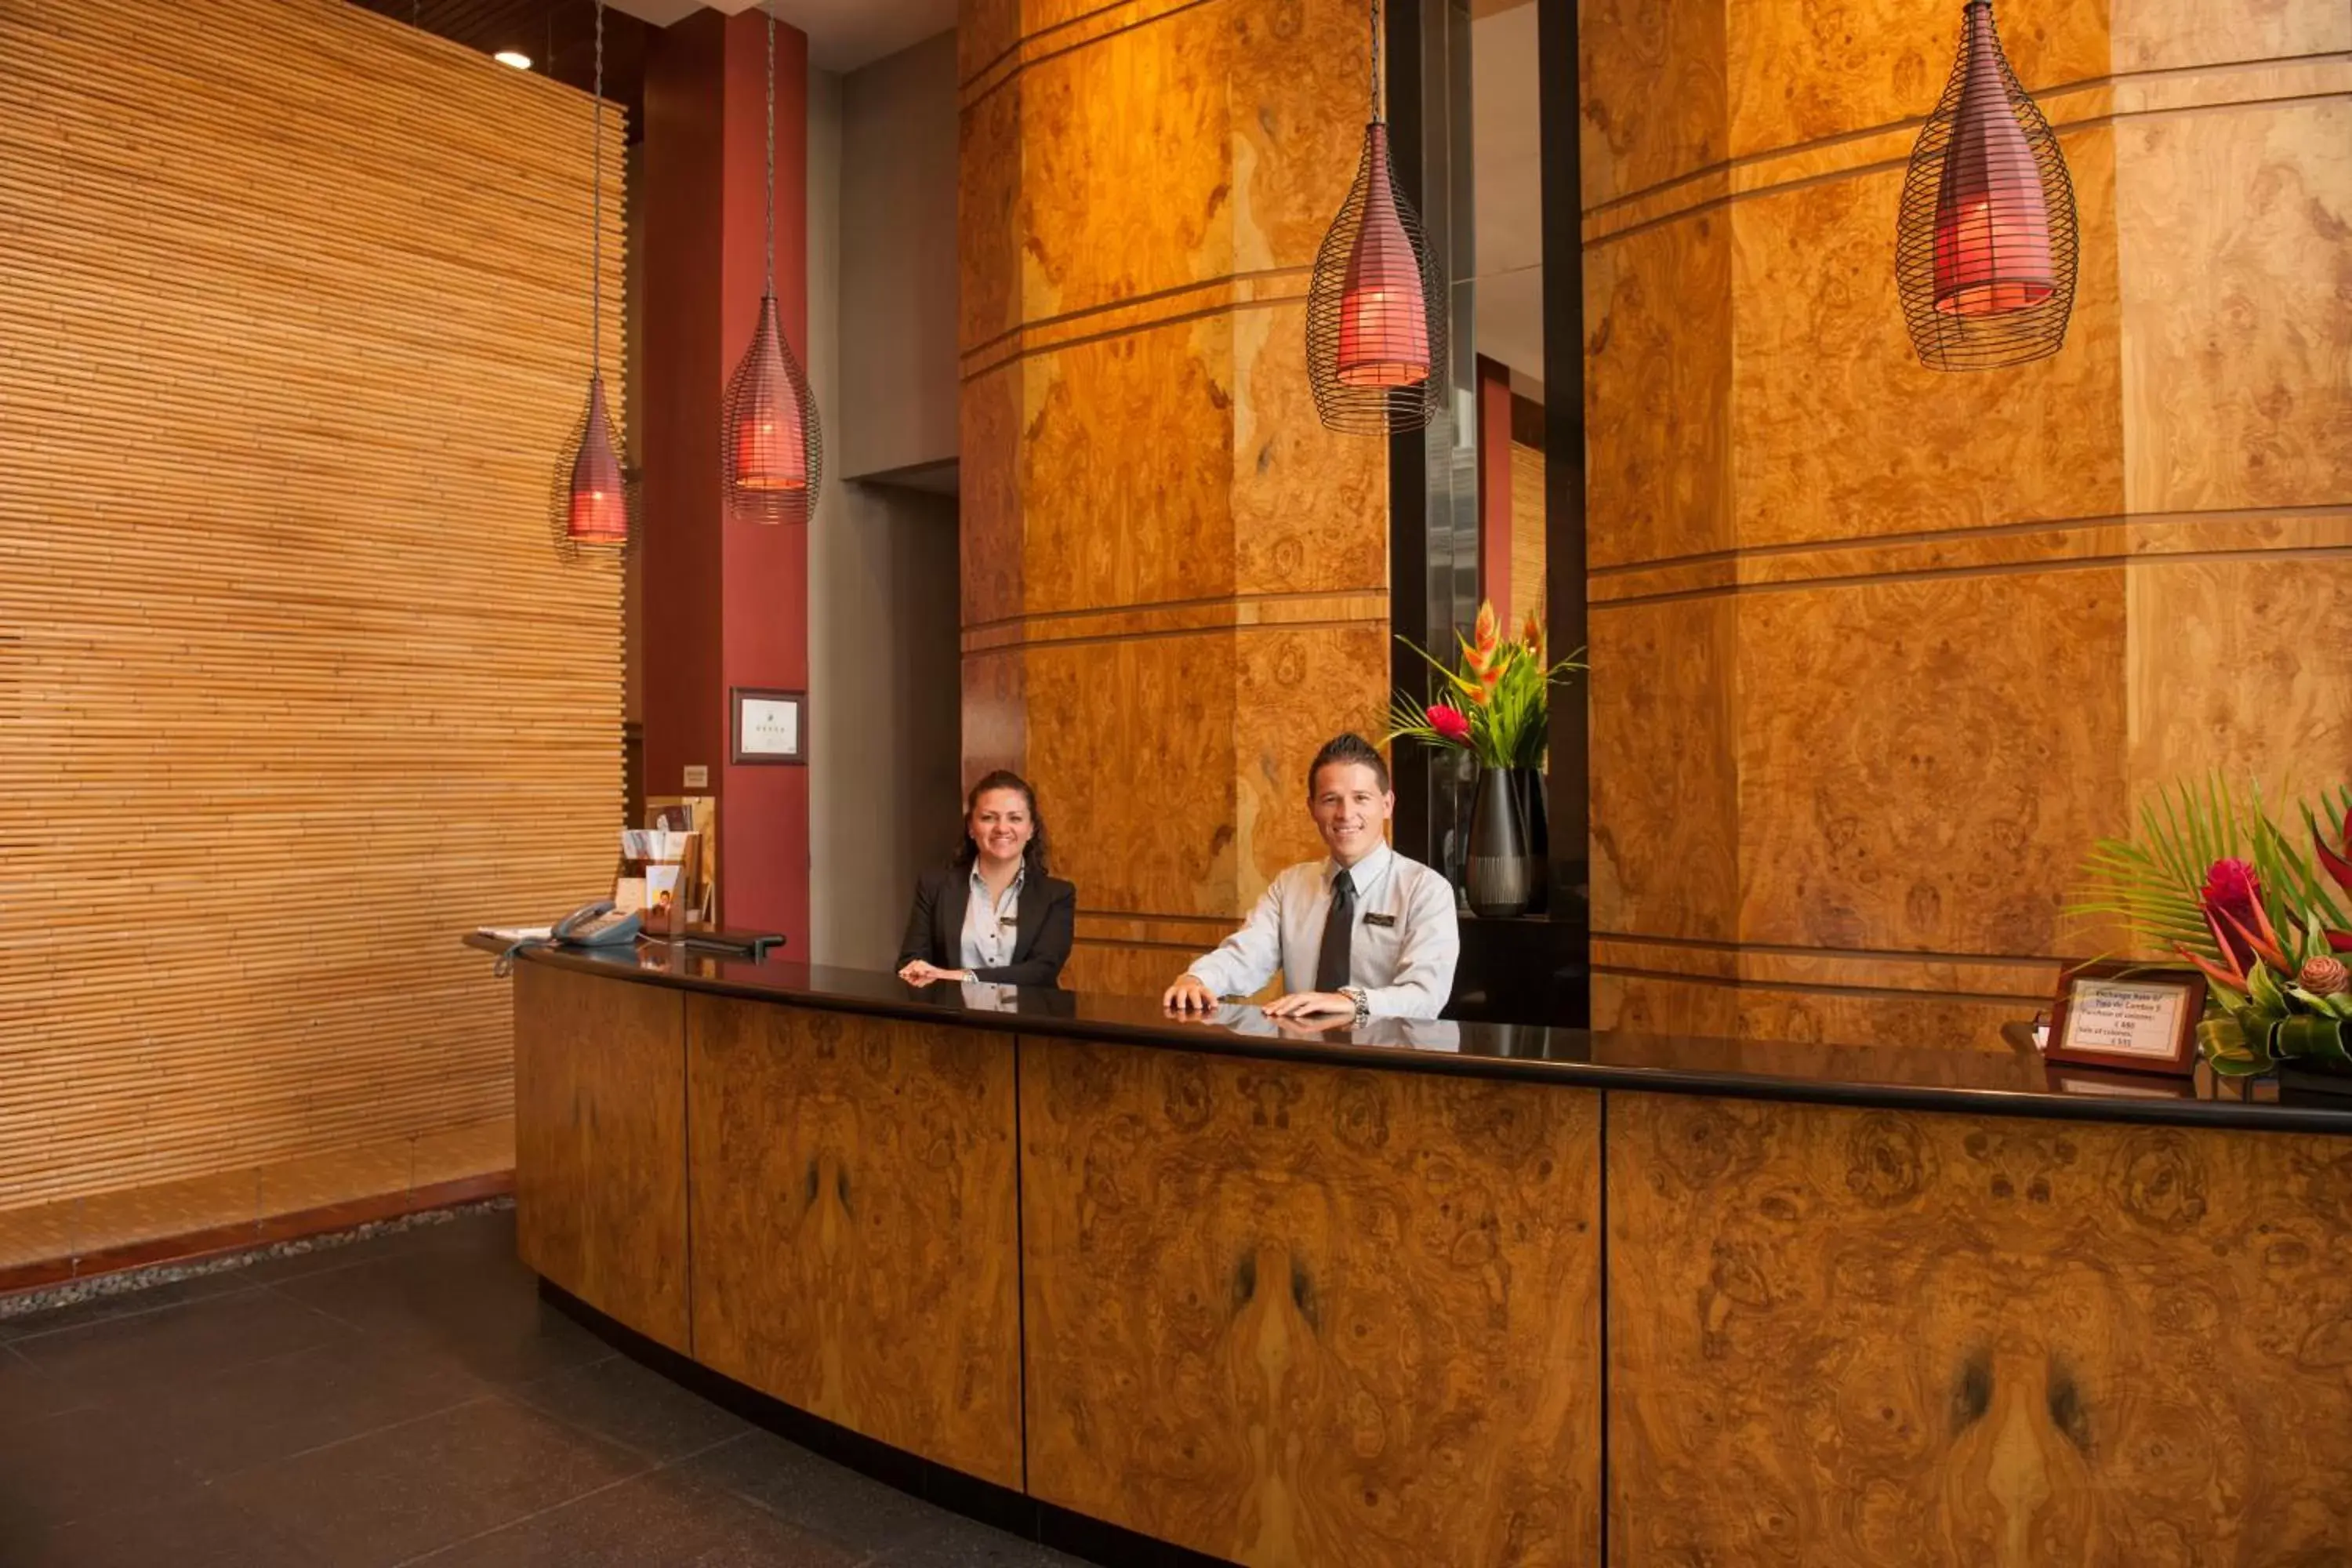 Lobby or reception, Lobby/Reception in Hotel Grano de Oro